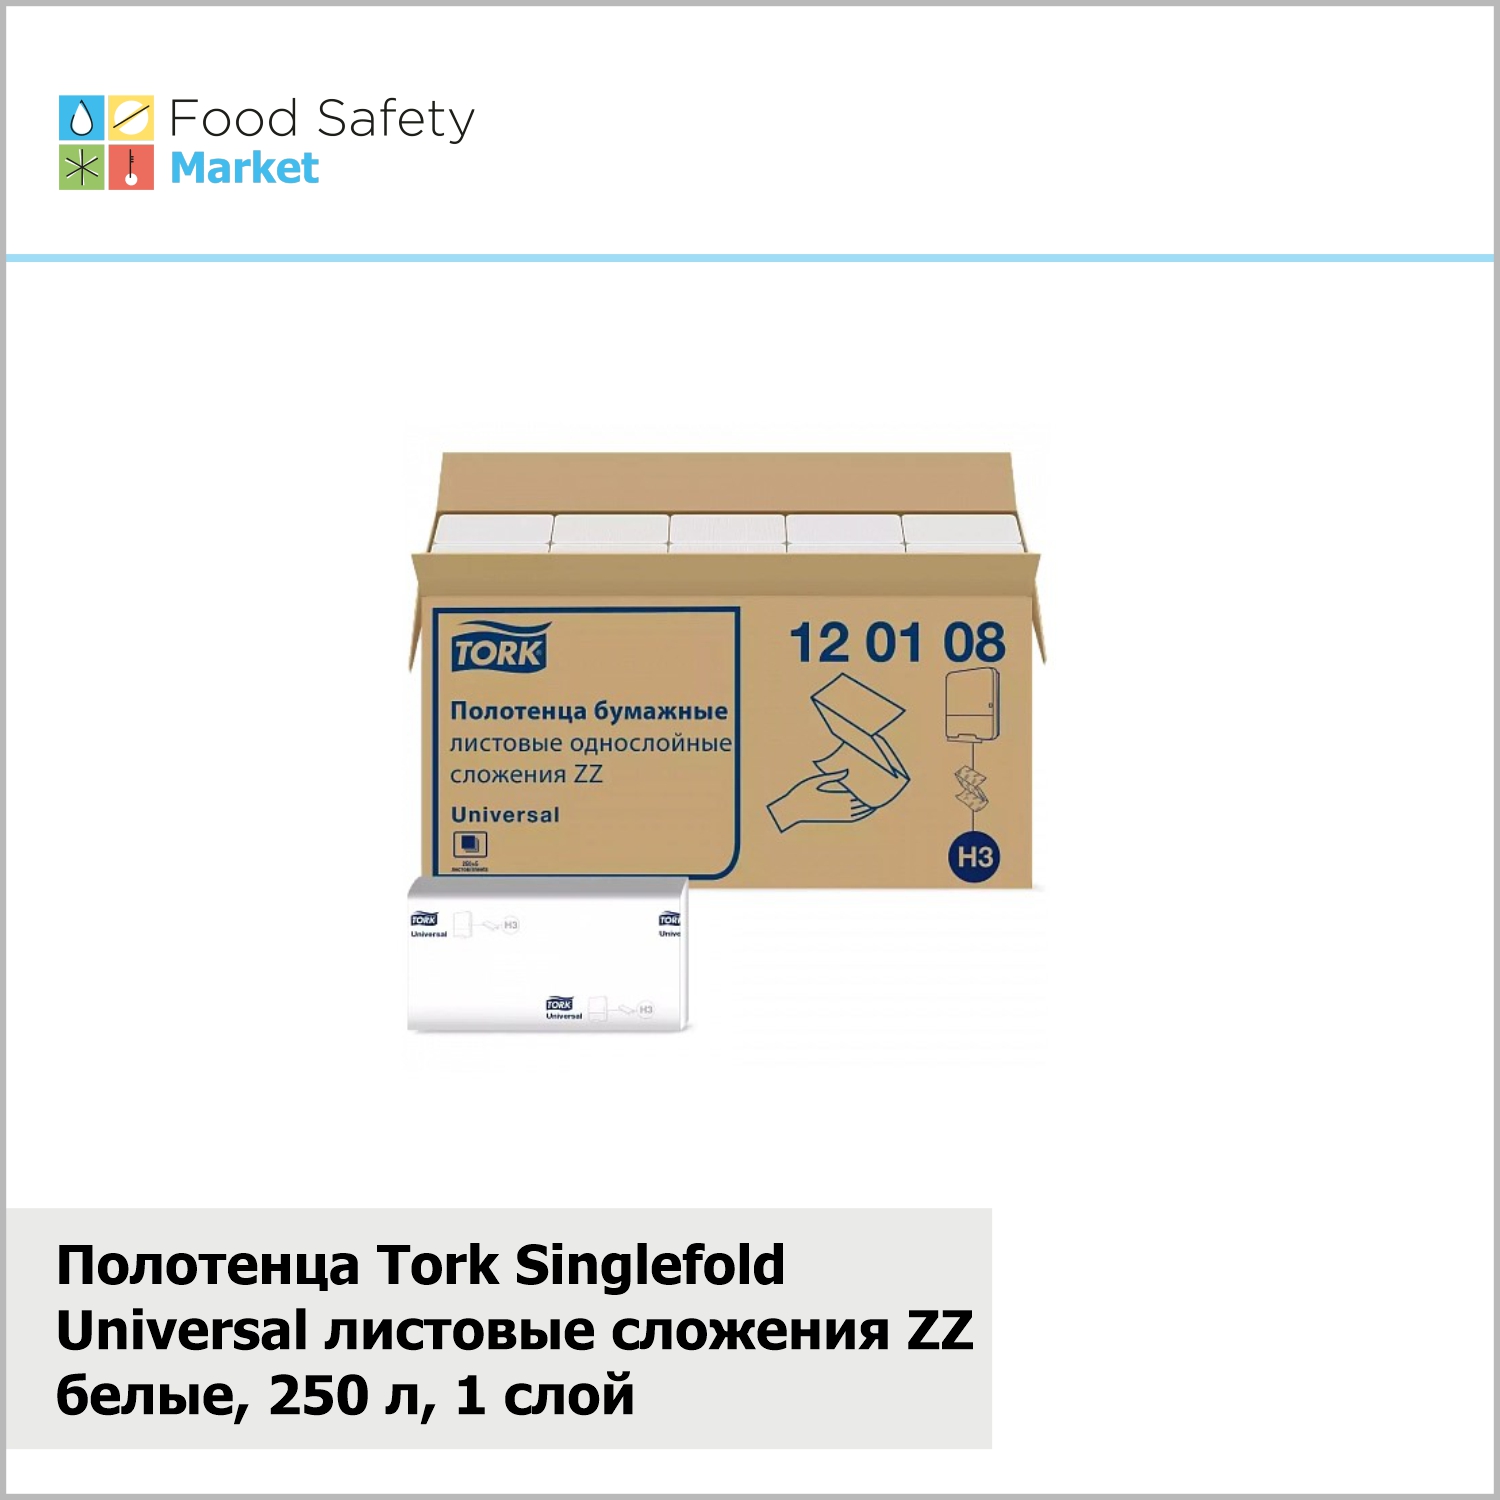 Полотенца Tork Singlefold Universal листовые сложения ZZ белые, 250 л, 1 слой